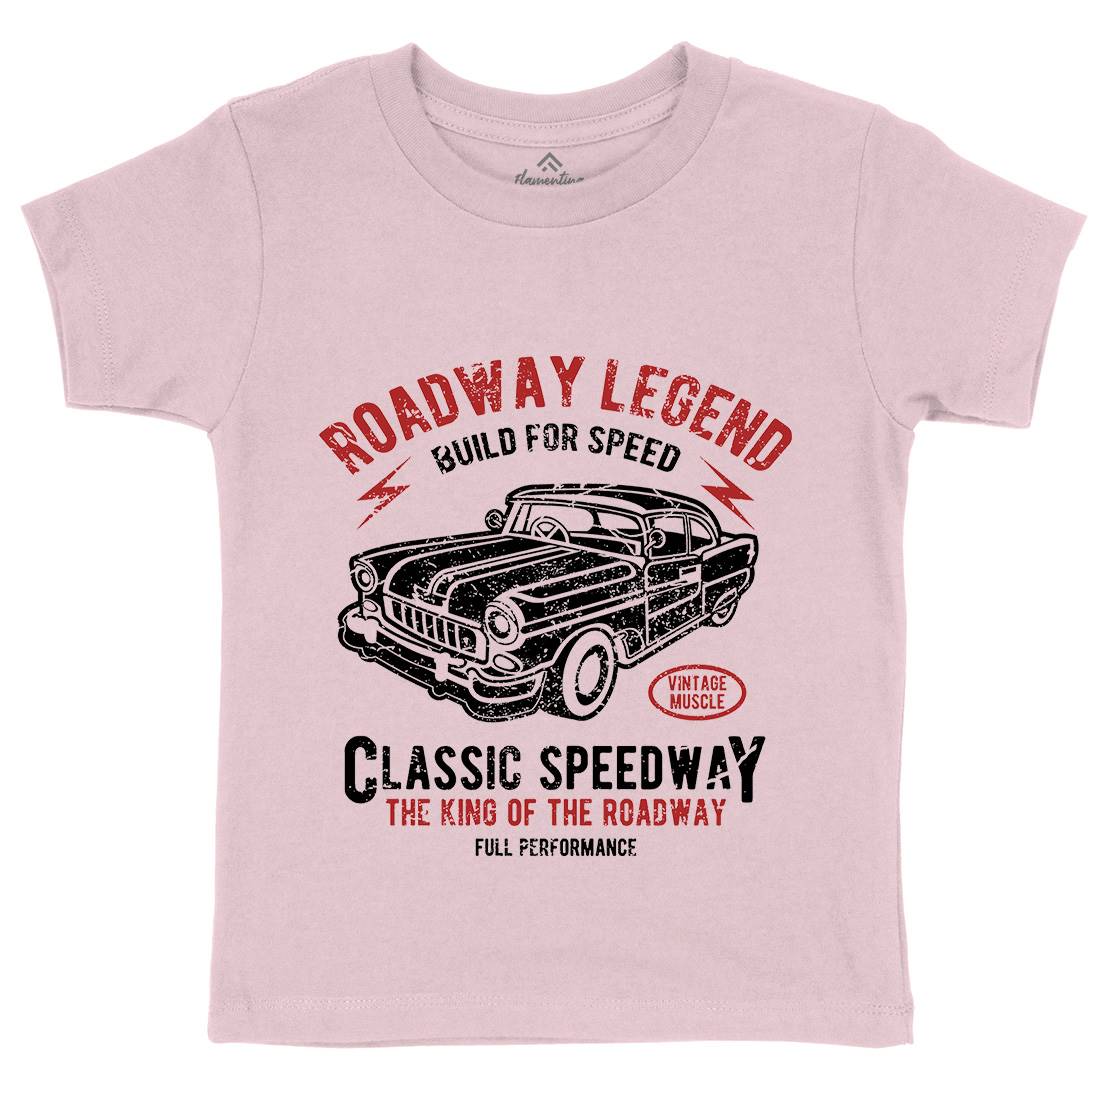 Roadway Legend Kids Crew Neck T-Shirt Cars A124